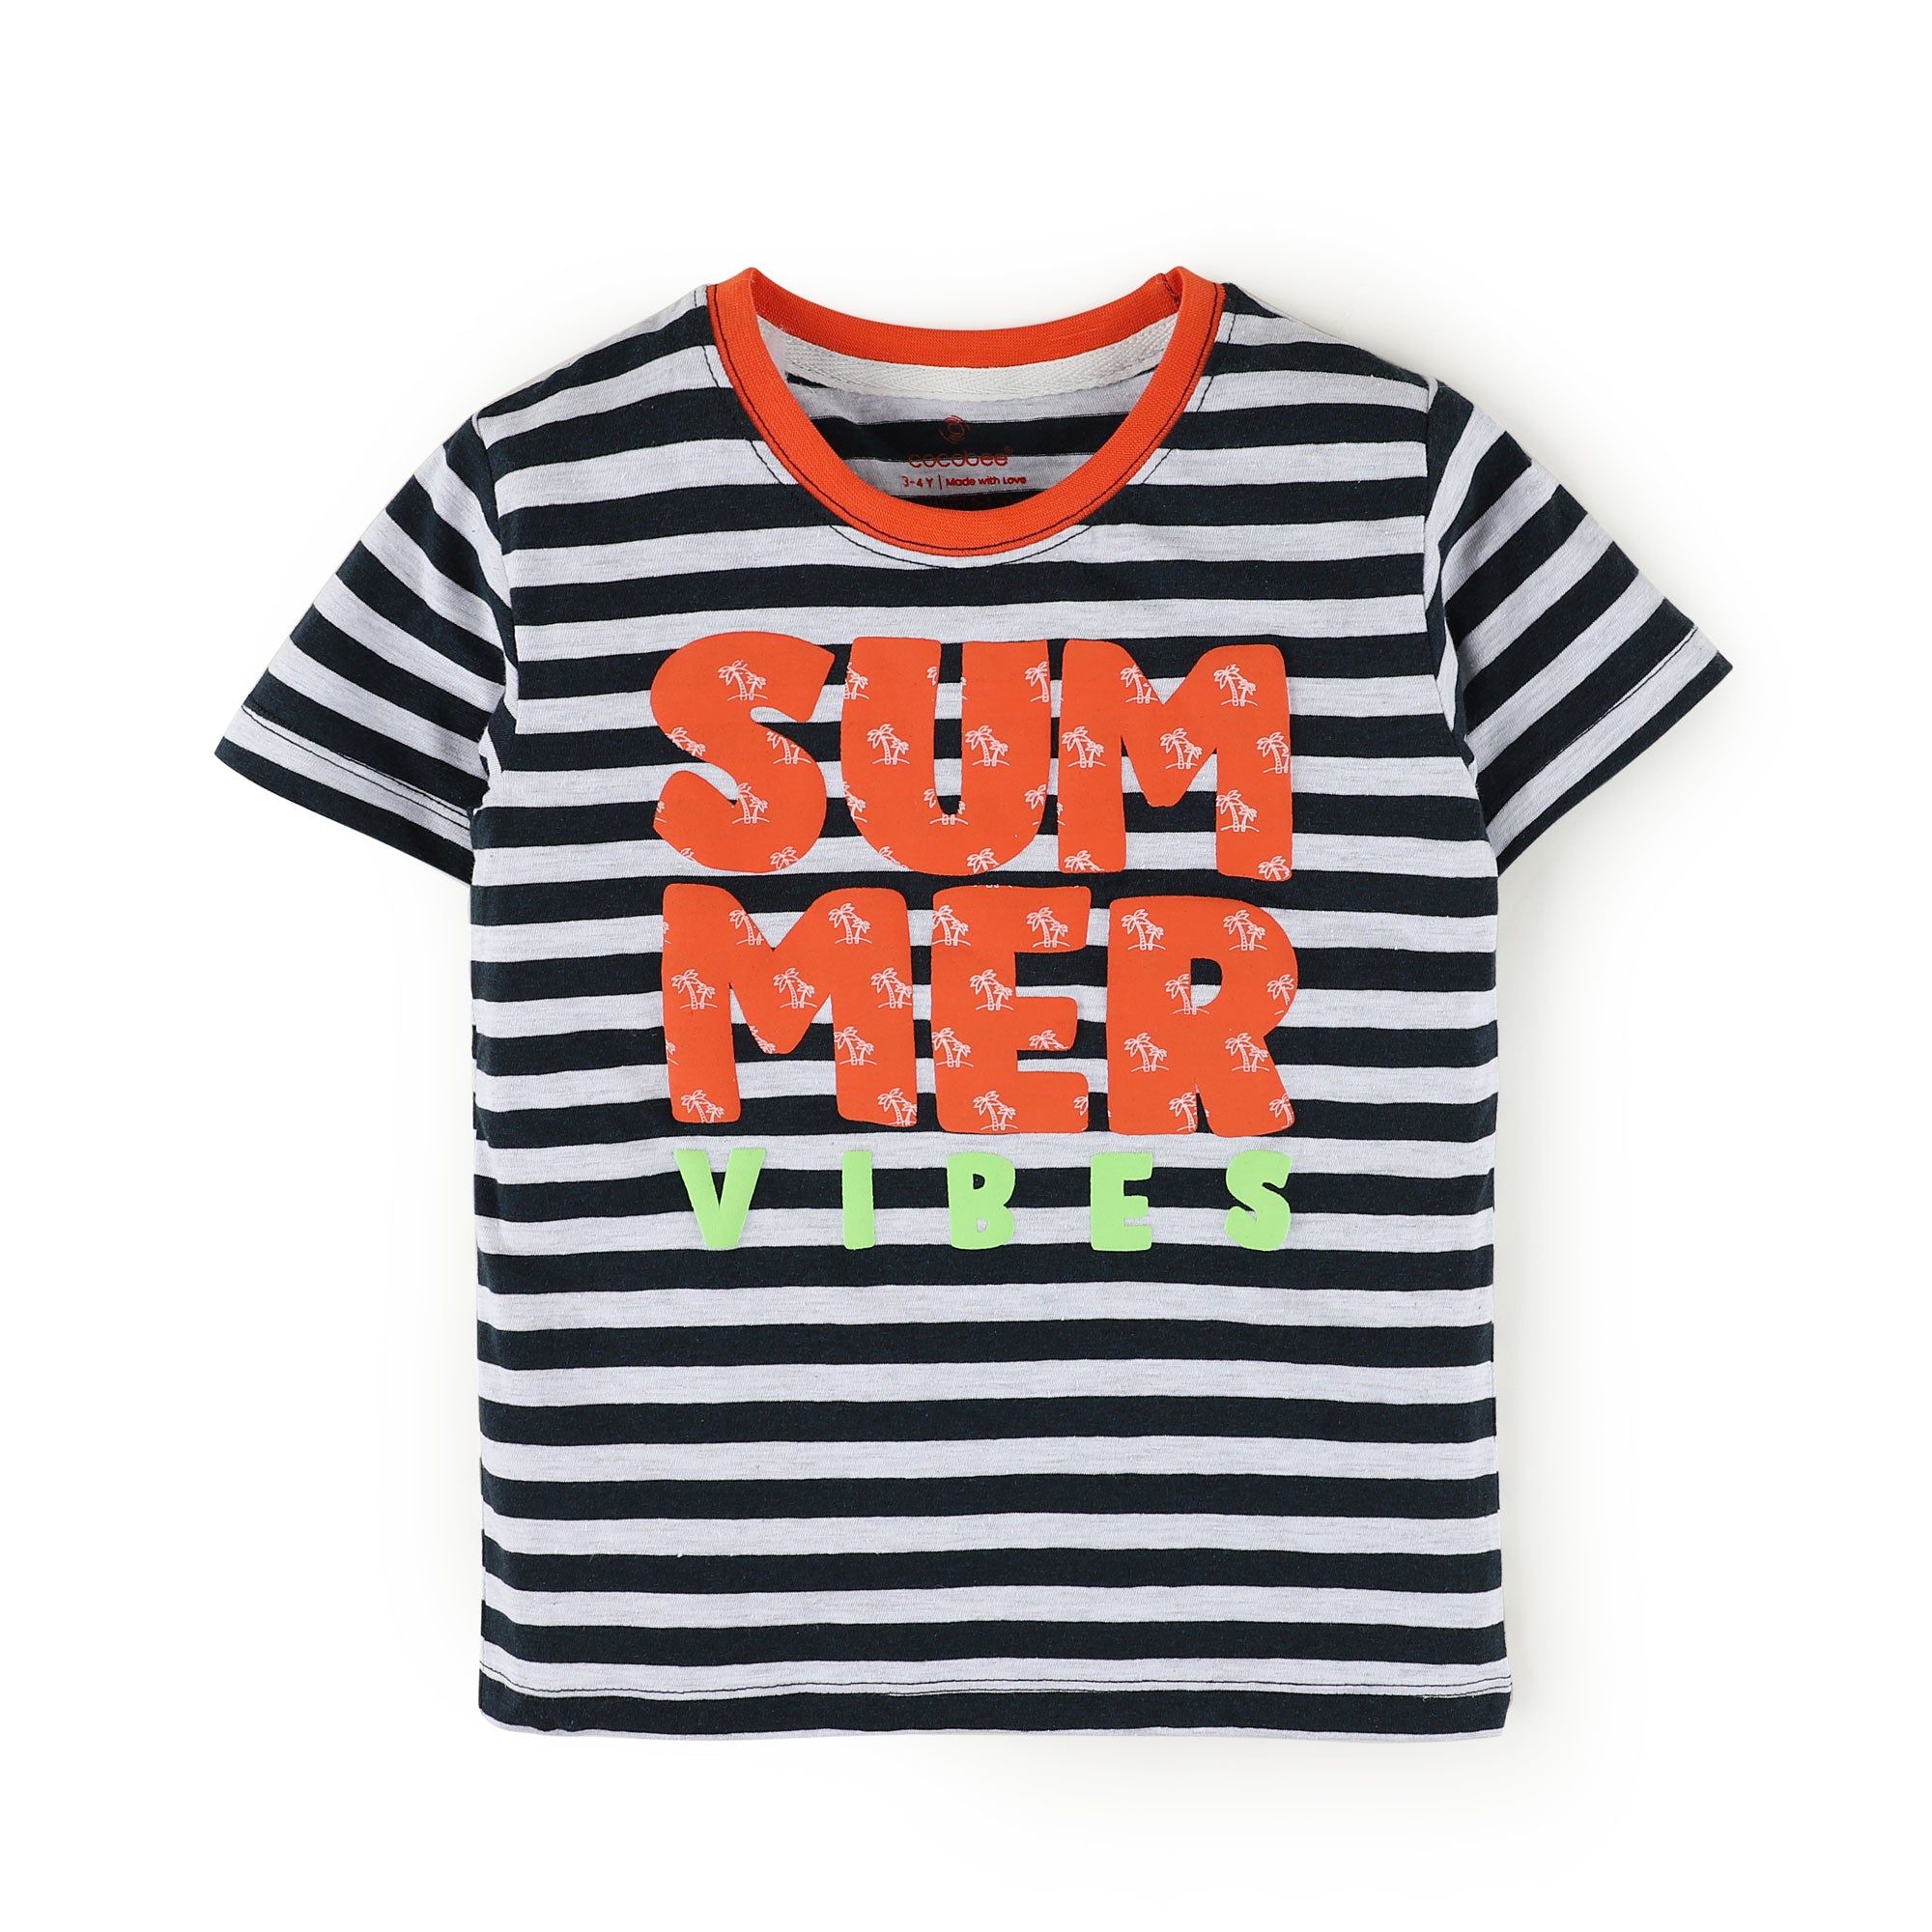 Cool Summer T-shirt